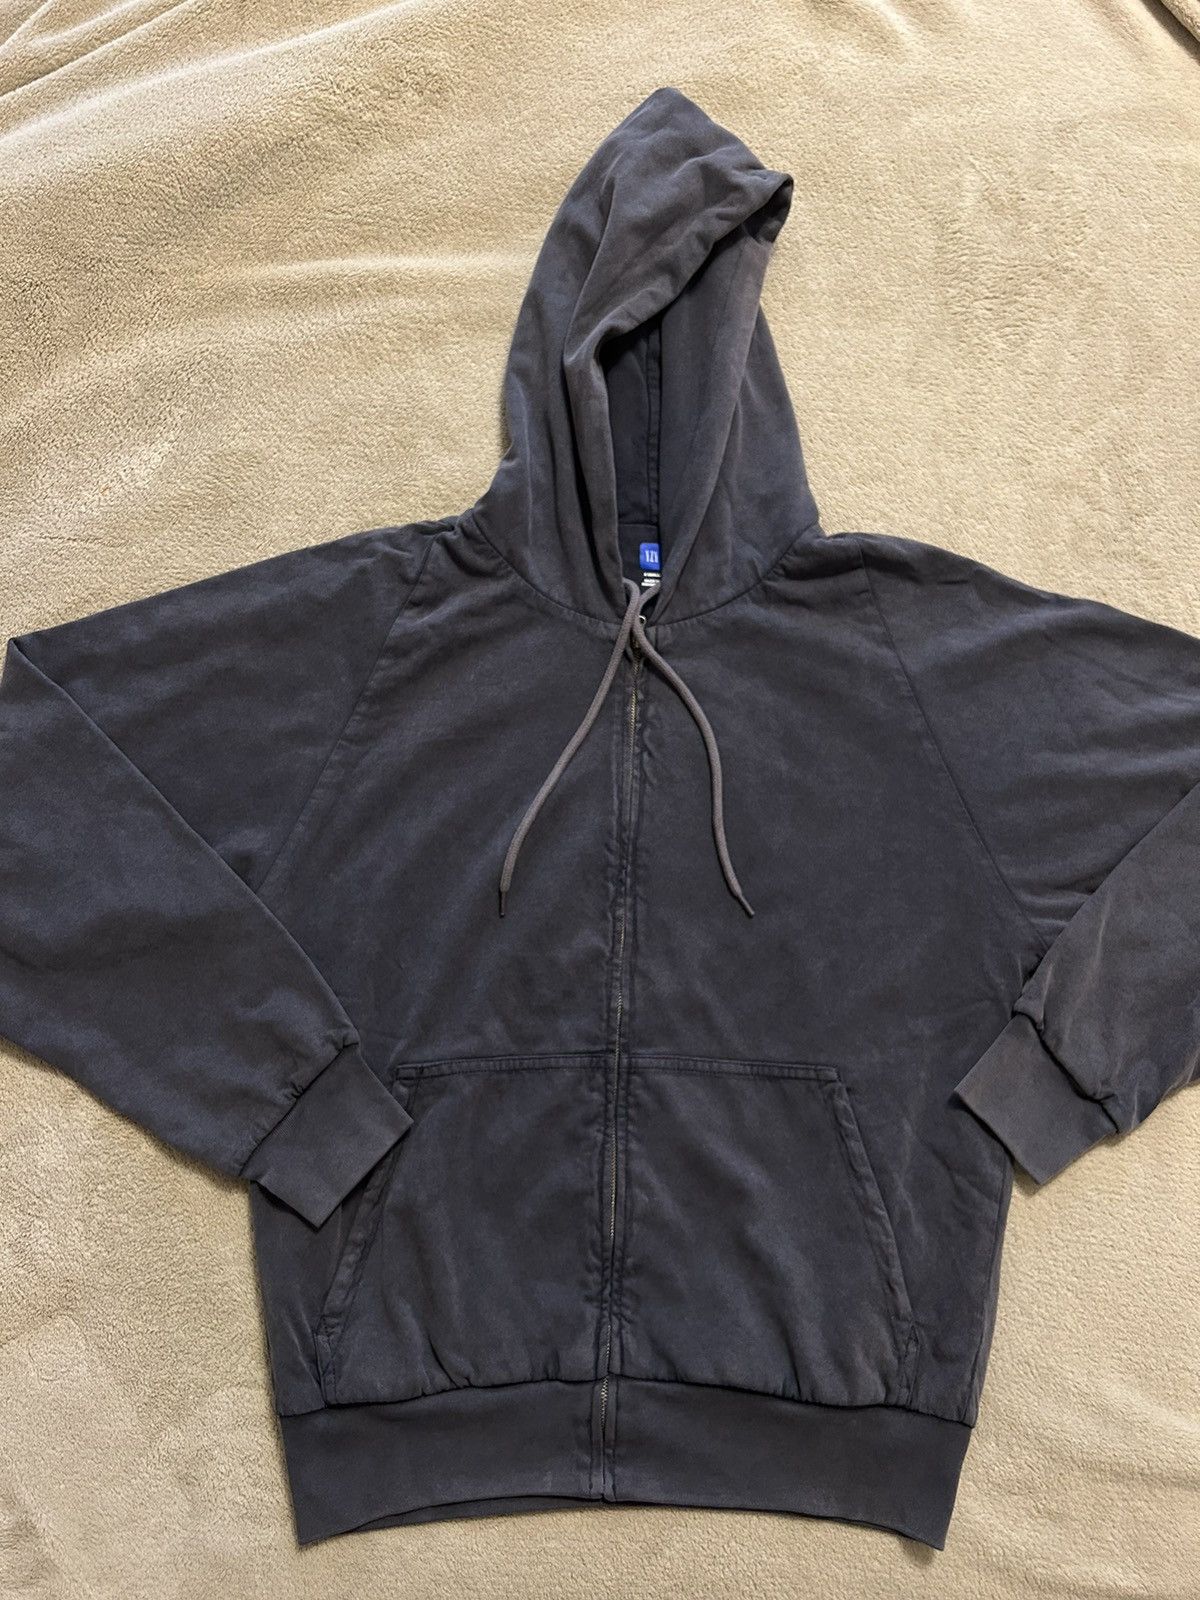 Yeezy Gap zip up hoodie POETIC BLACK XLyzygap